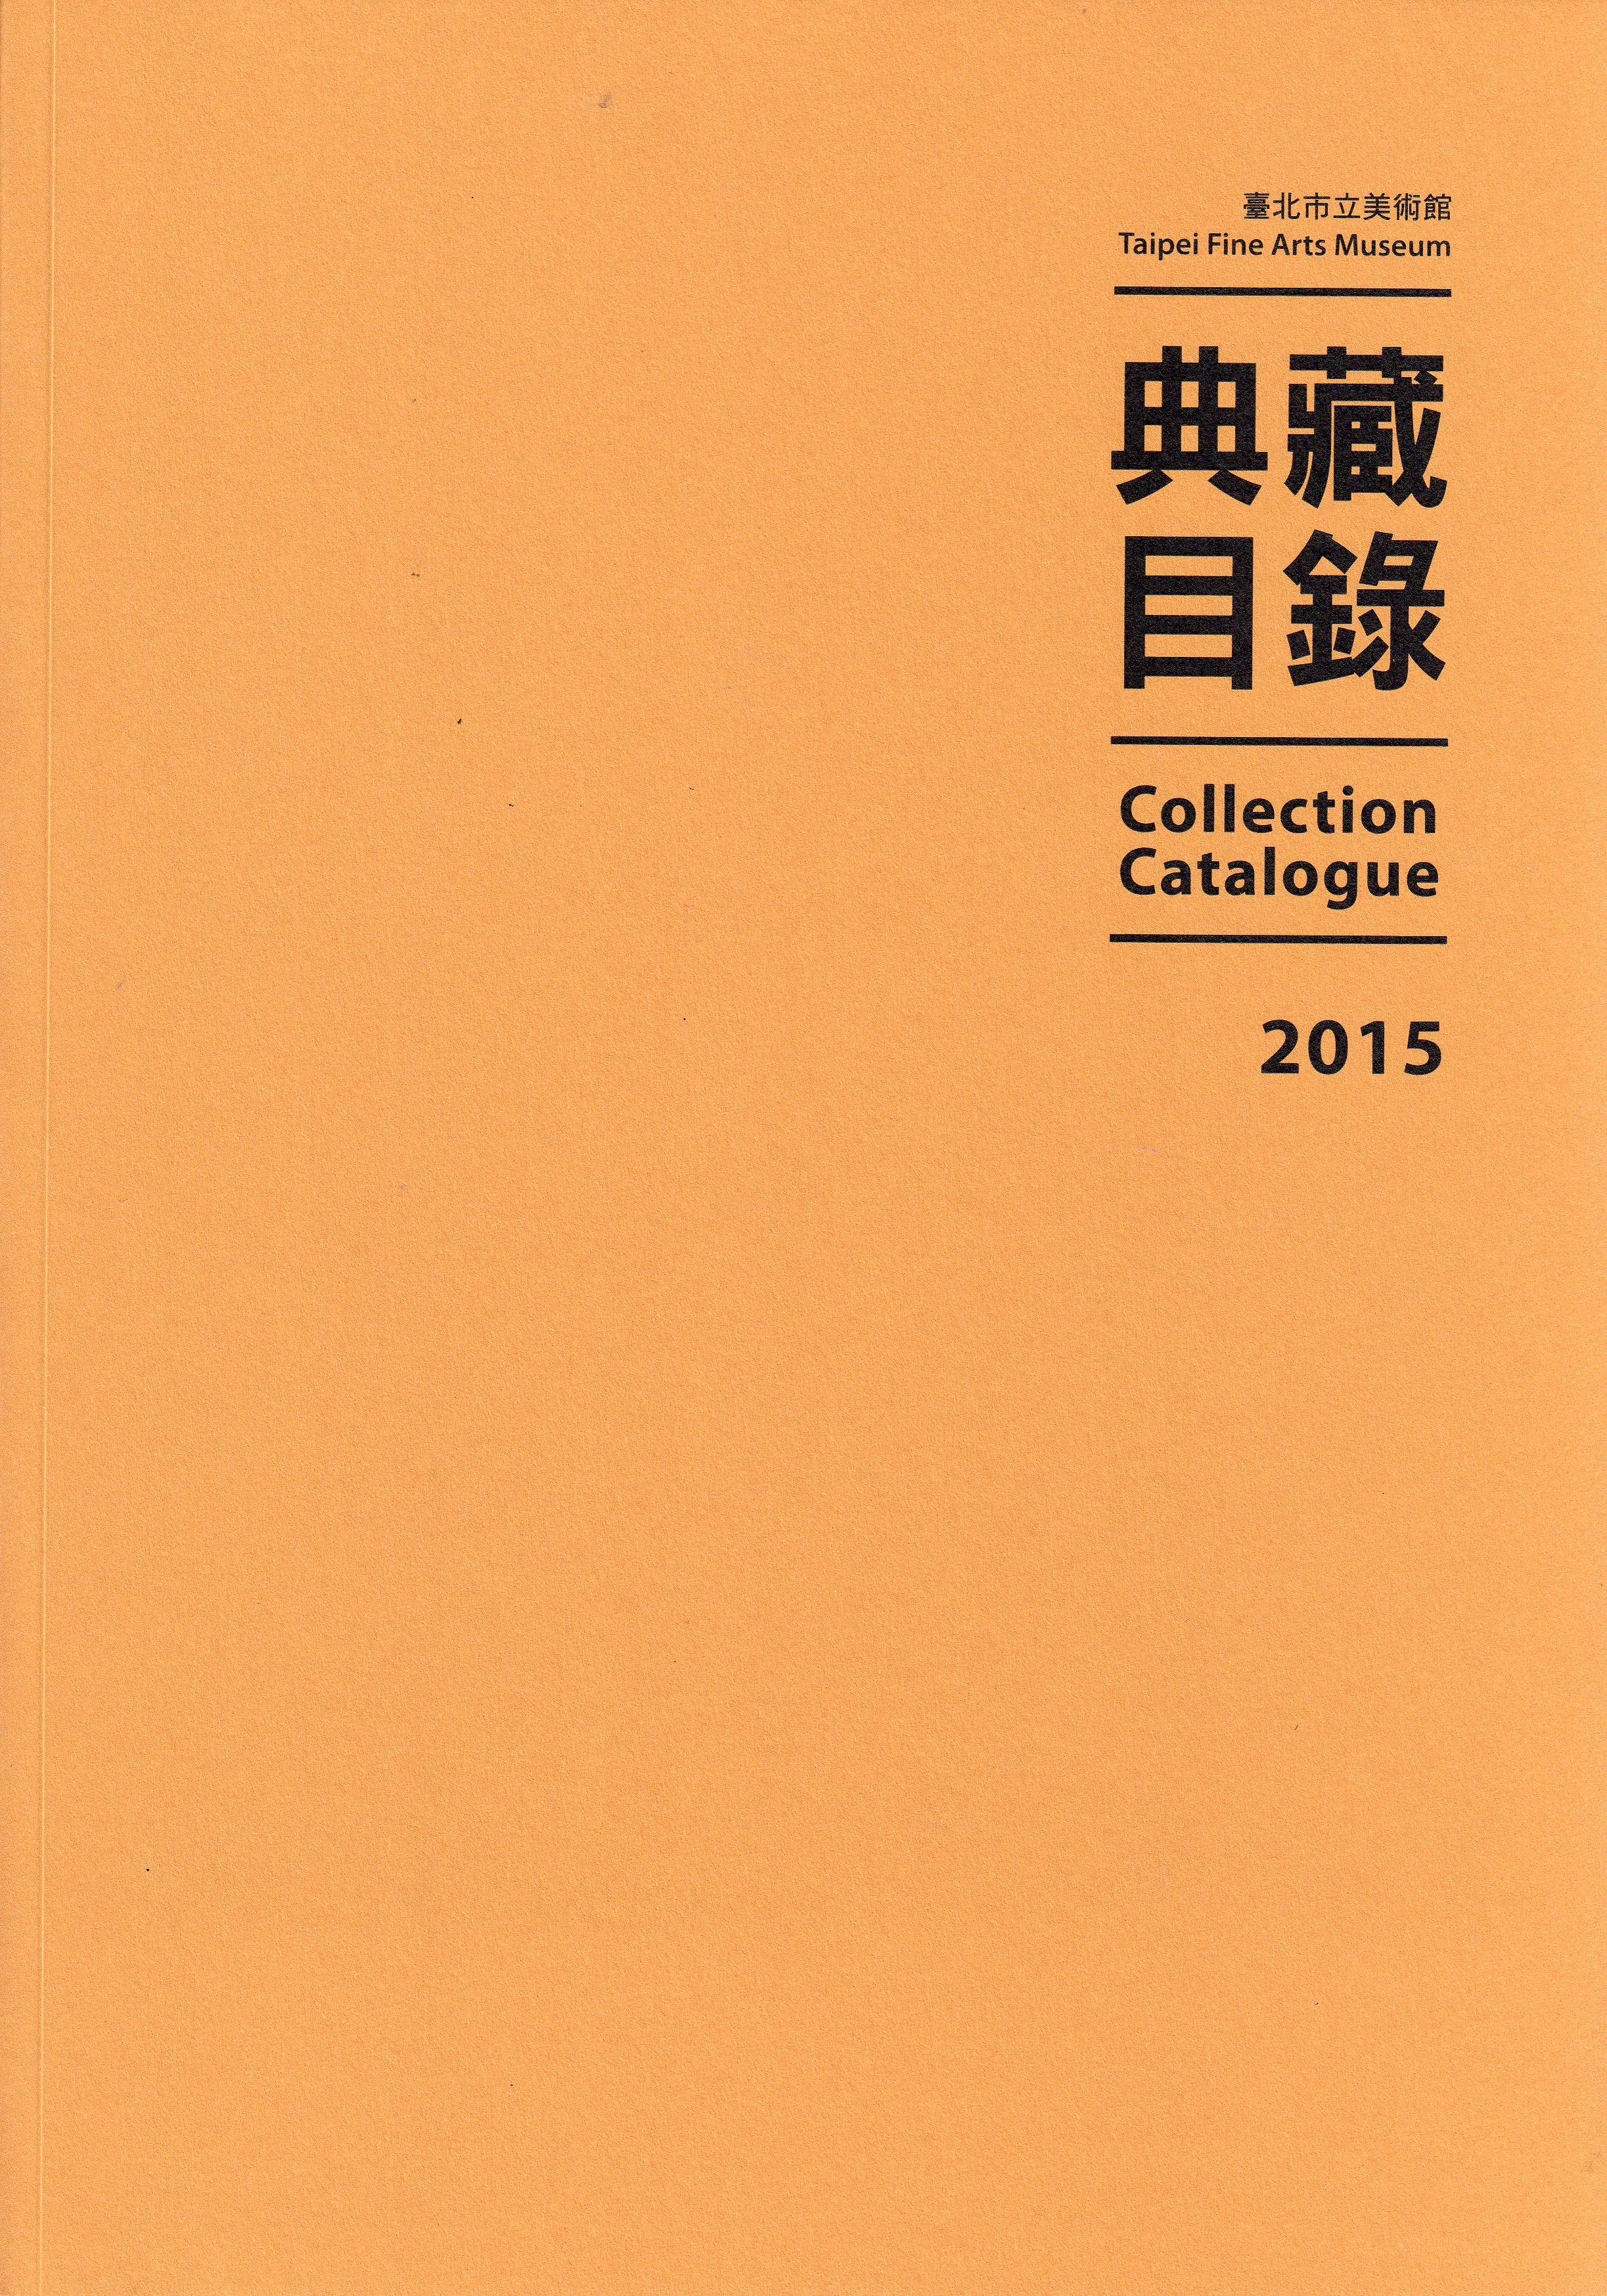 臺北市立美術館典藏目錄104(2015)  的圖說